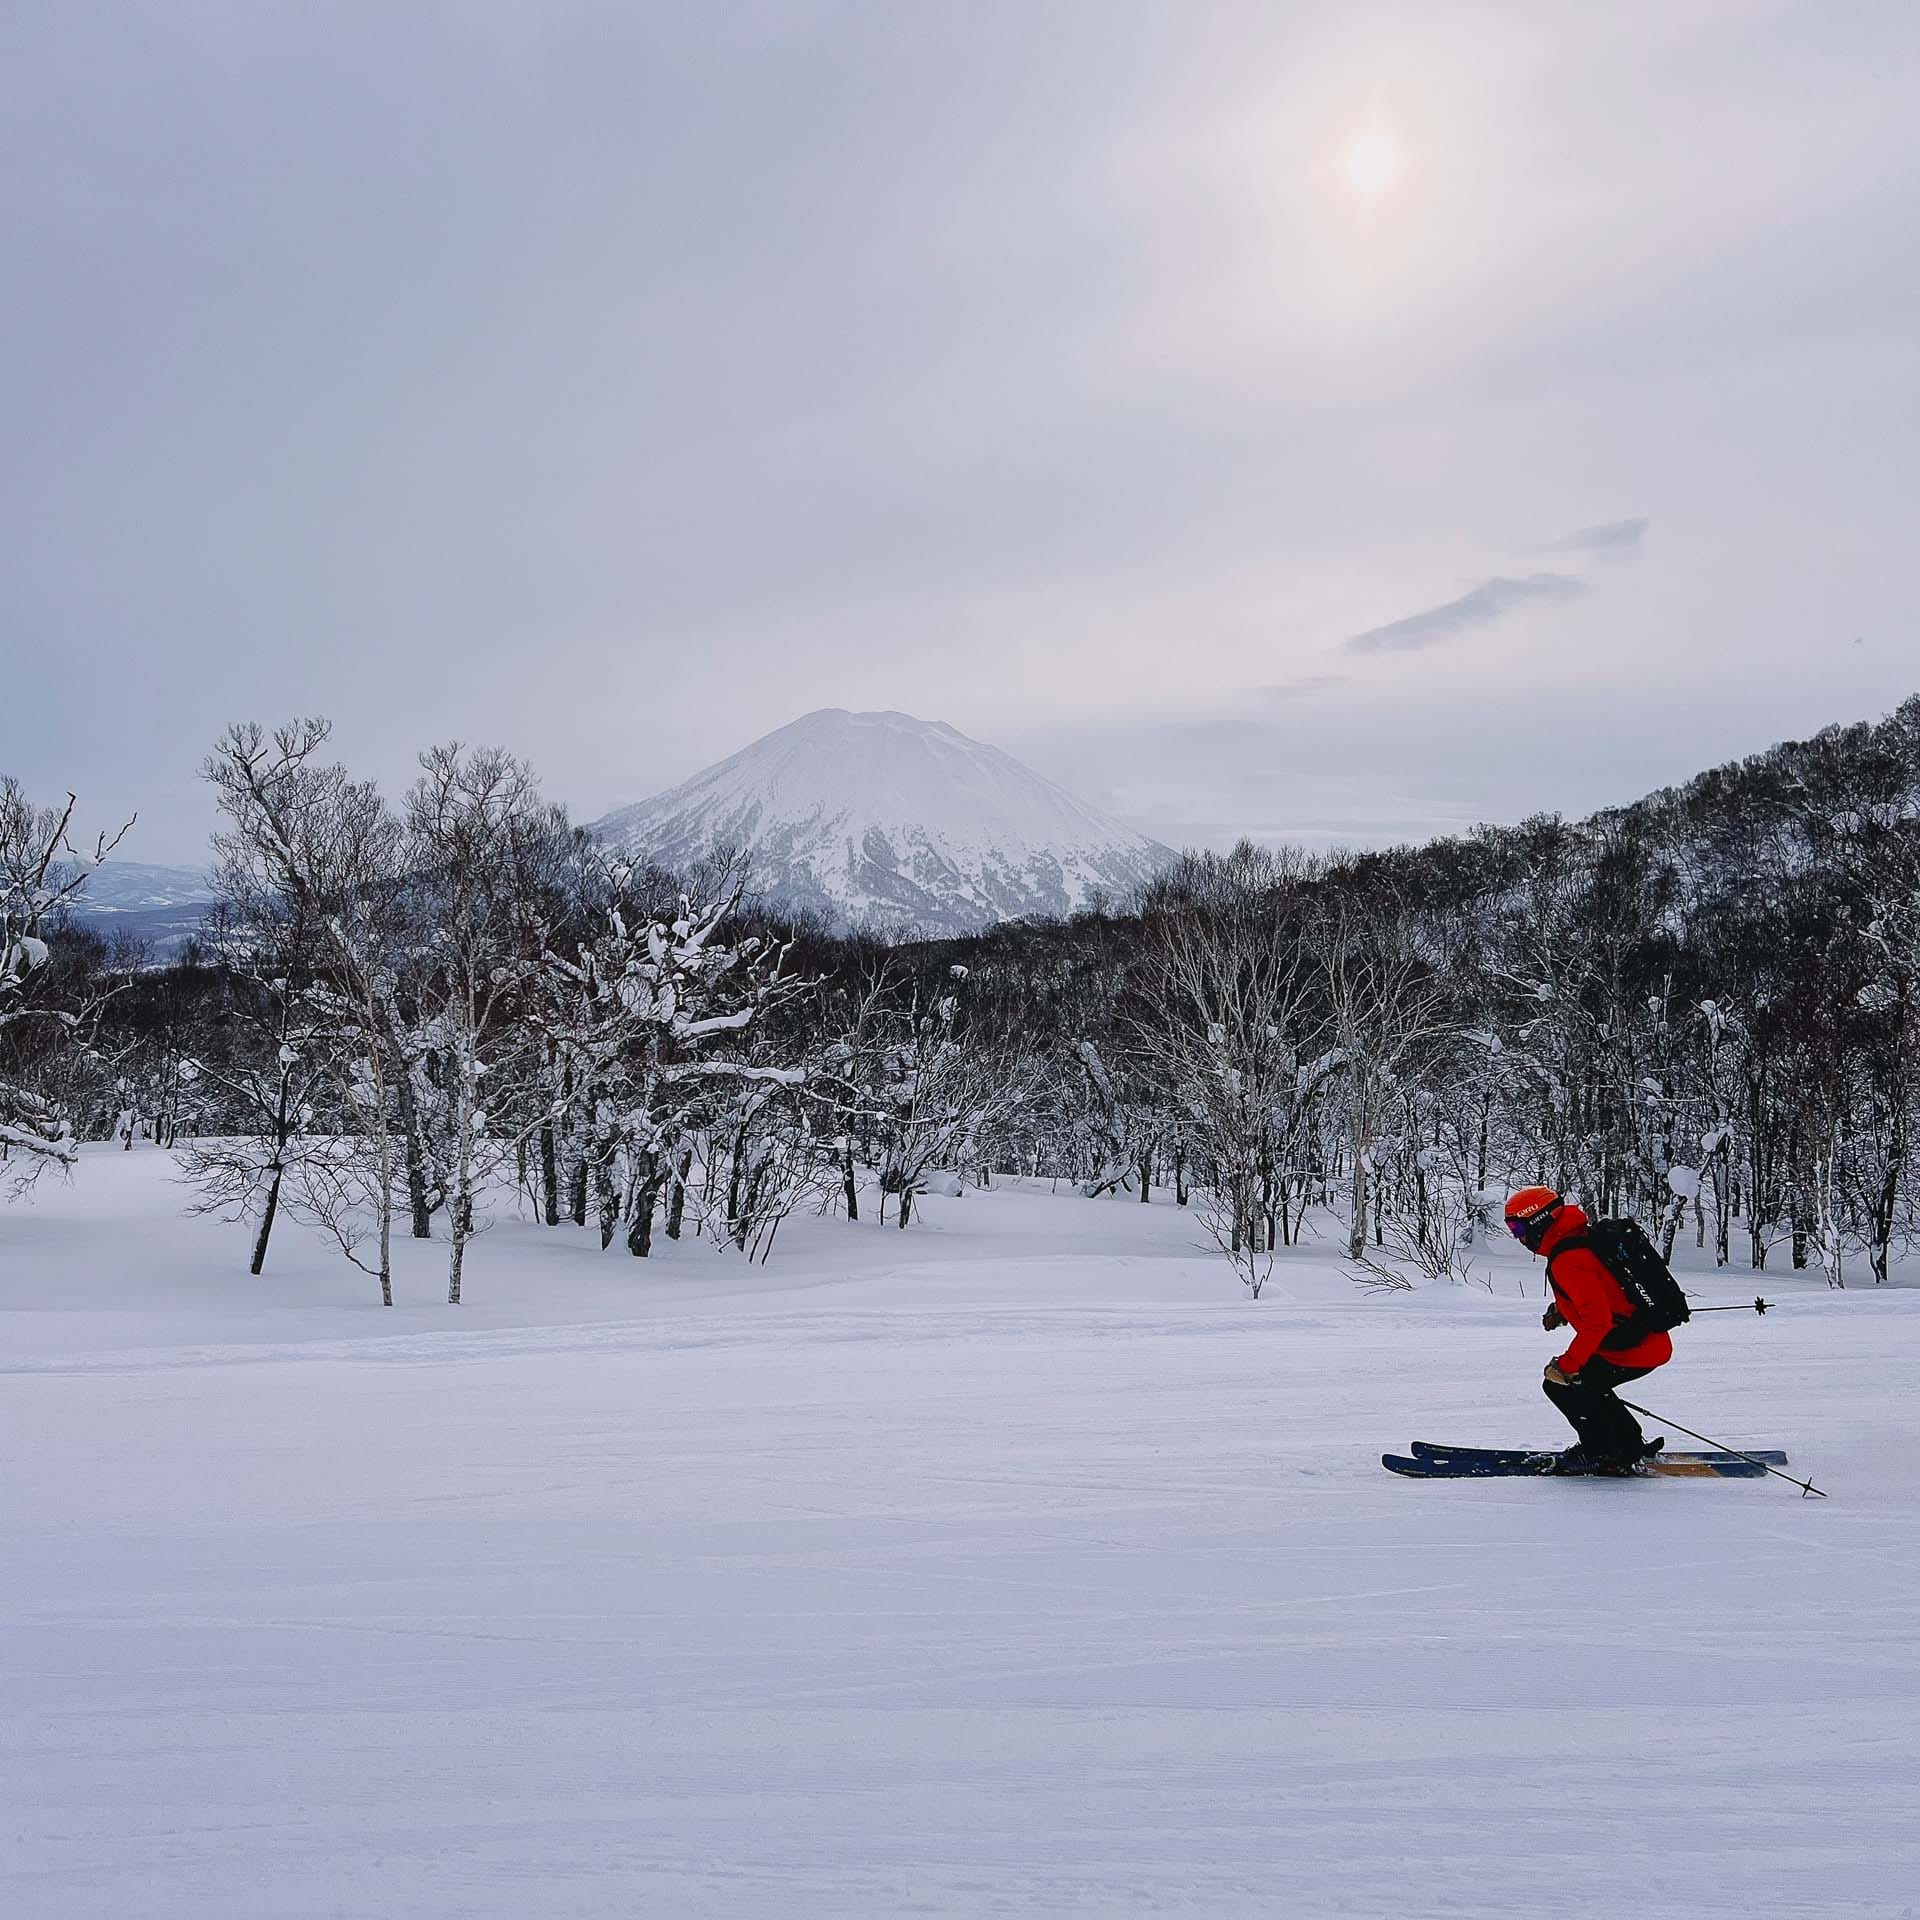 Skiing in Japan: Why Niseko Is Best For Beginners, Photo by Ally Burnie, skiing, japan, niseko, skiing guide, skiing in niseko